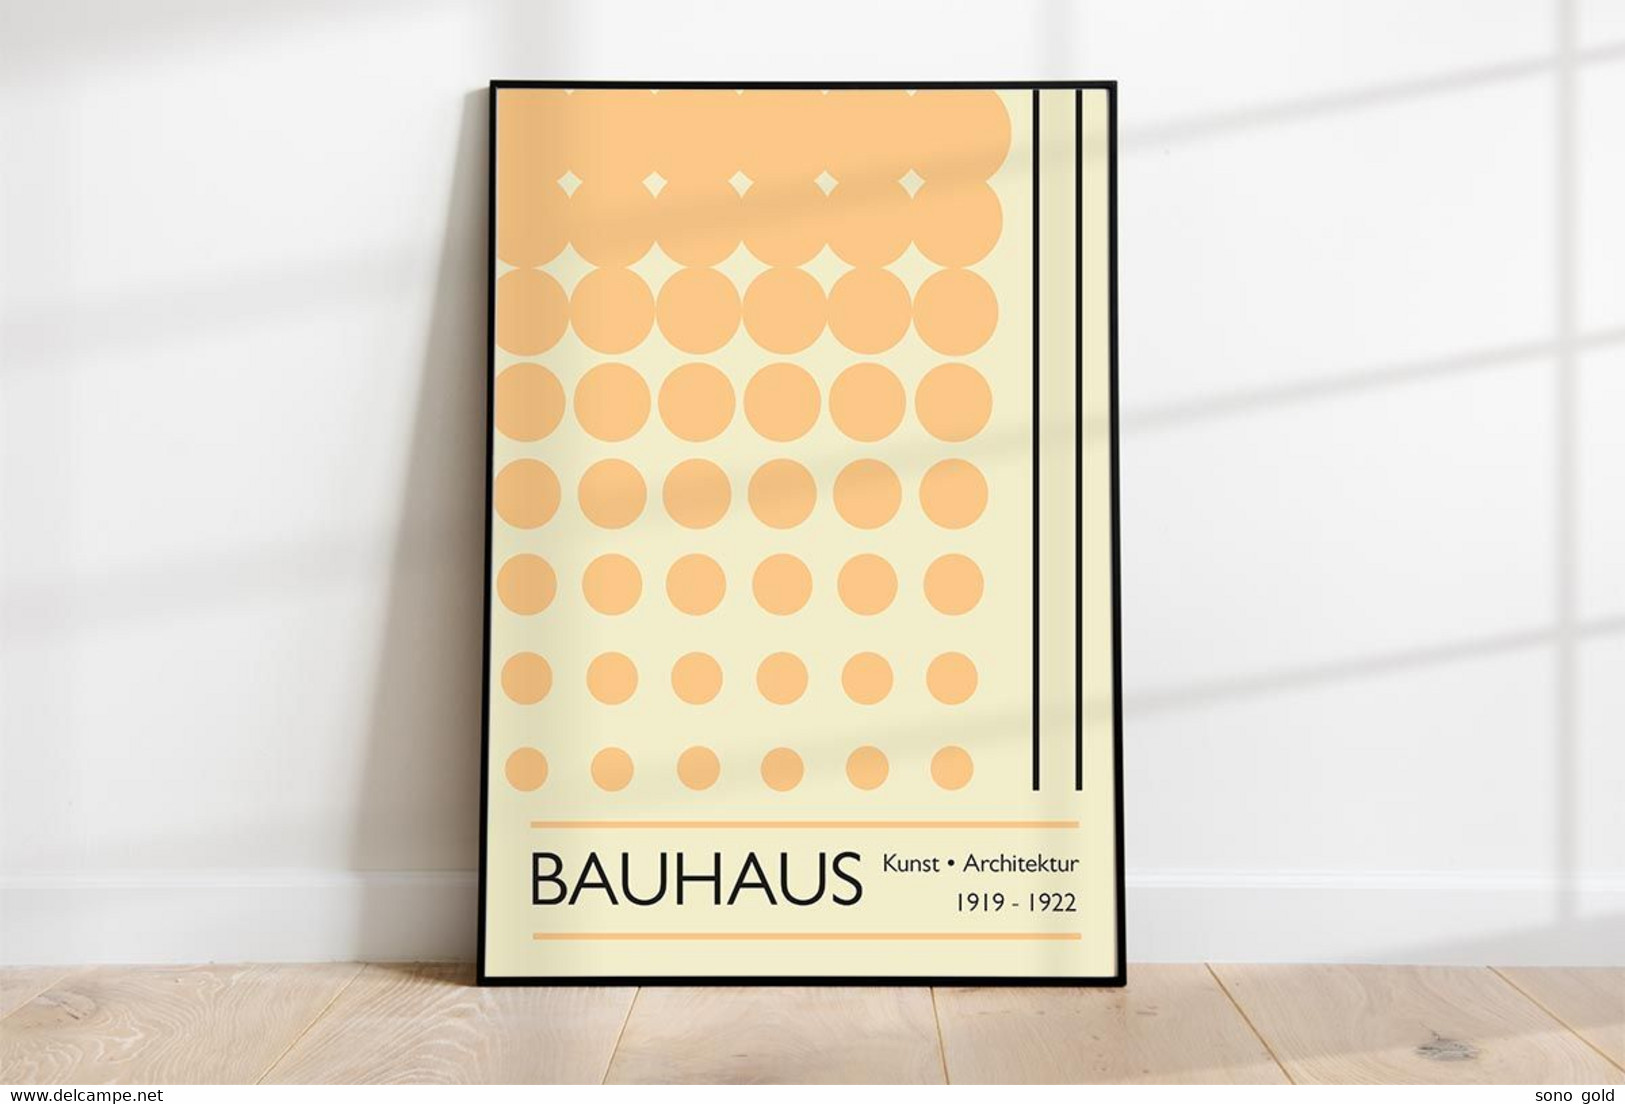 Bauhaus Ausstellung 1919 - 1922 ~ Exibition ~ Manifesto ~ Poster ~ Design ~ Architecture ~ Vintage ~ Mid Century - Contemporary Art